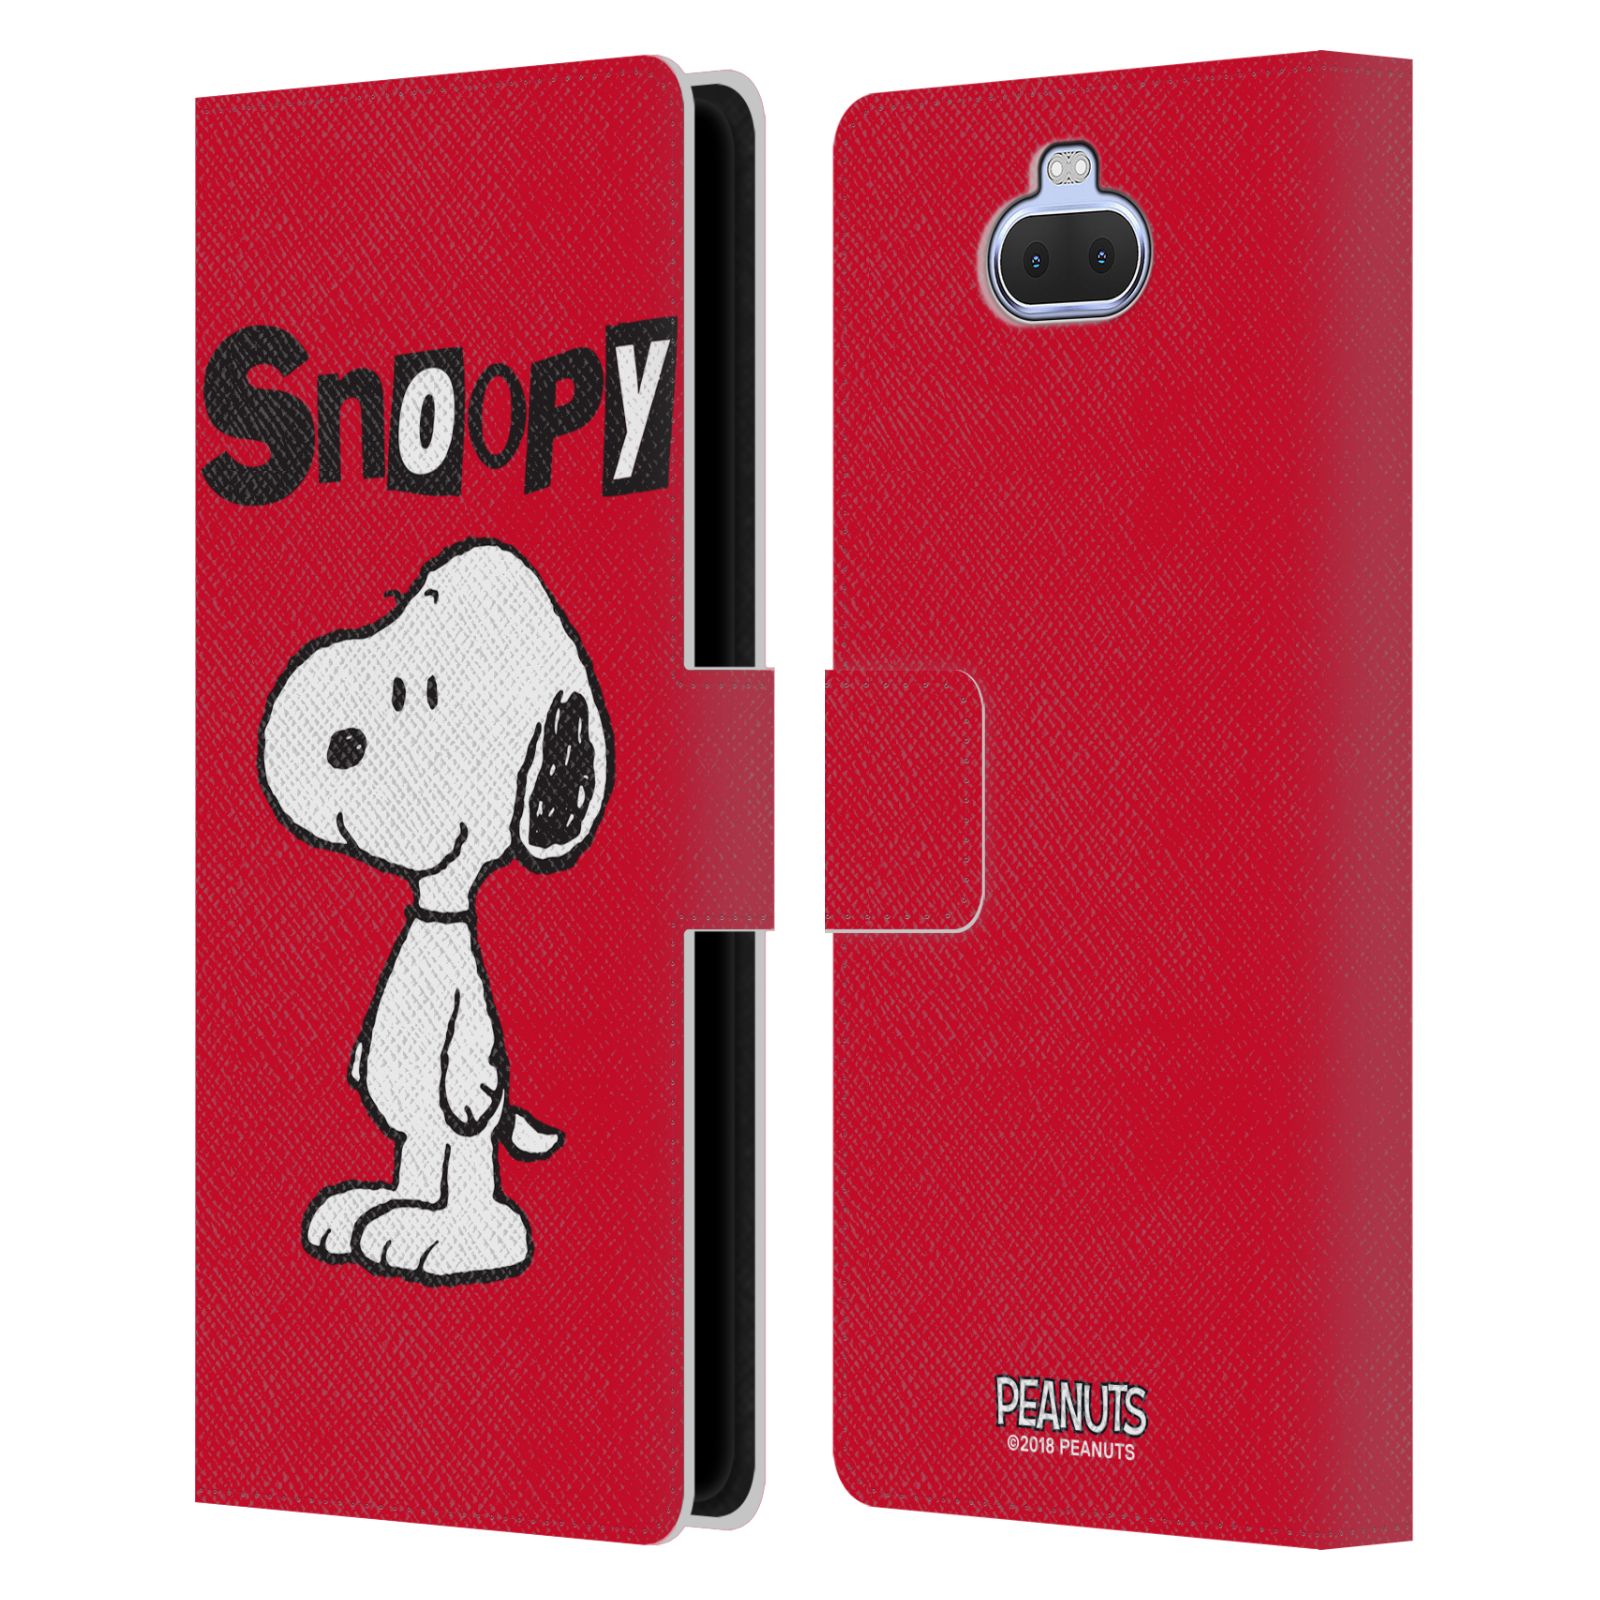 Pouzdro na mobil Sony Xperia 10 PLUS  - HEAD CASE - Peanuts - Snoopy červená